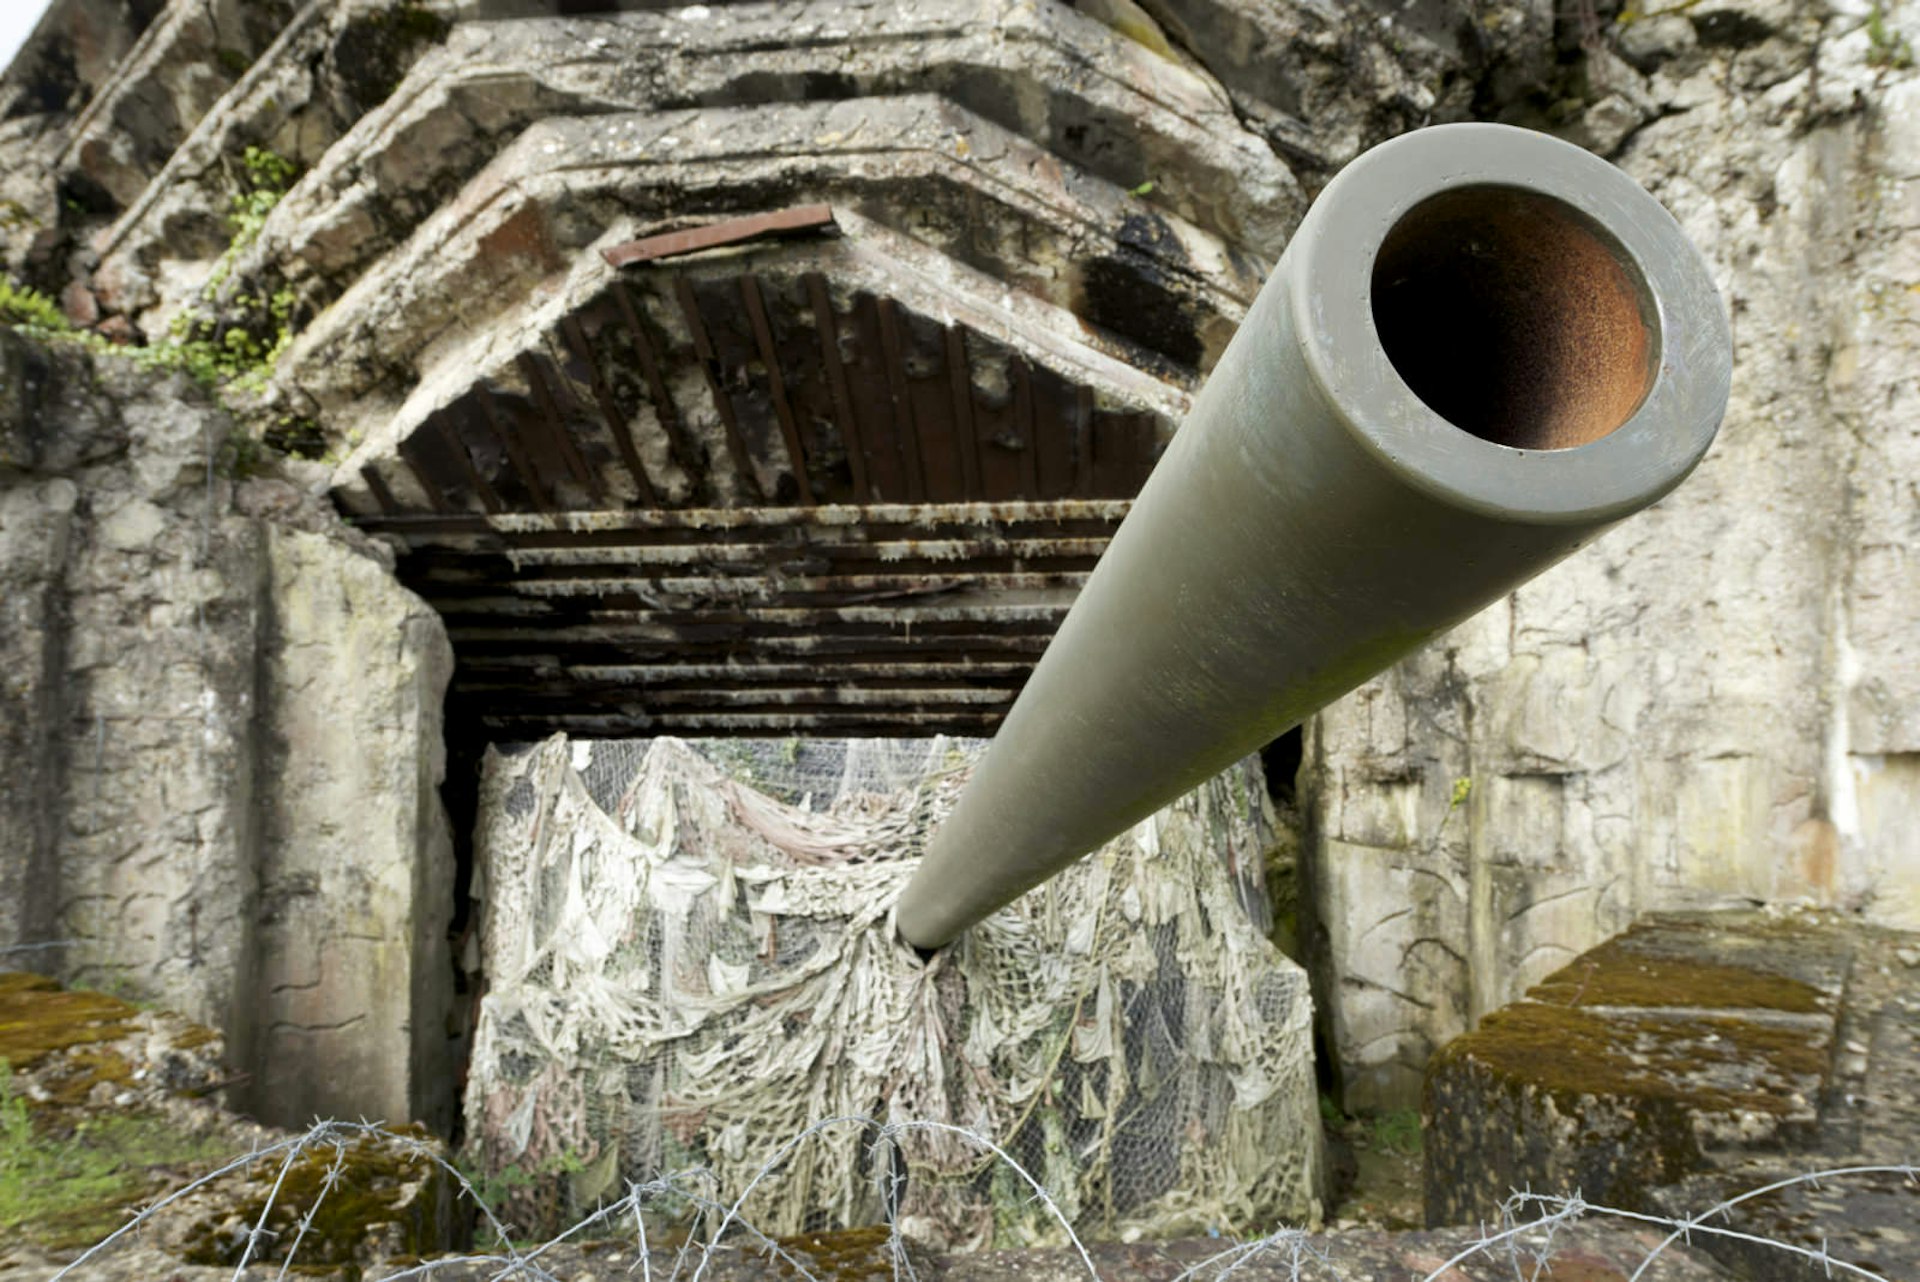 The Longues-sur-Mer Battery is a 150mm German artillery gun © pedrosala / Shutterstock